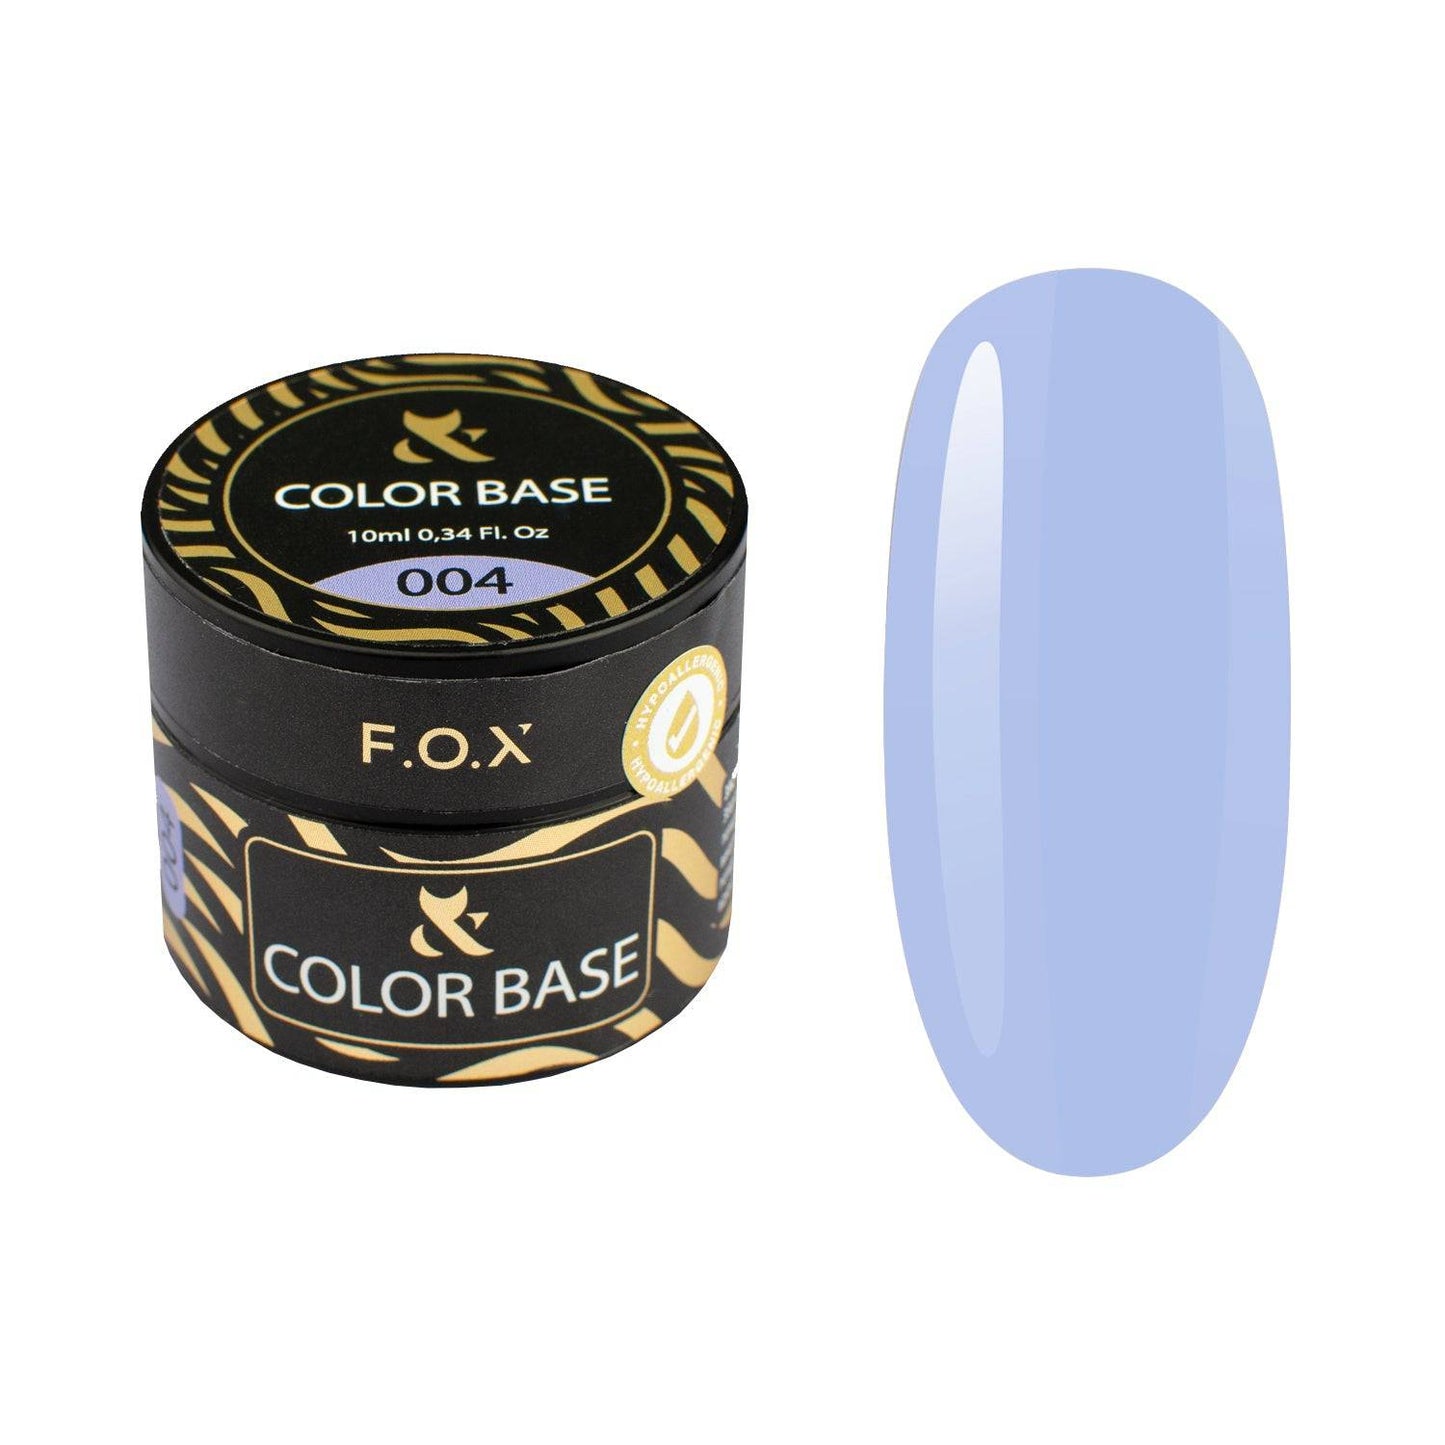 F.O.X Color base 004 - F.O.X Nails USA